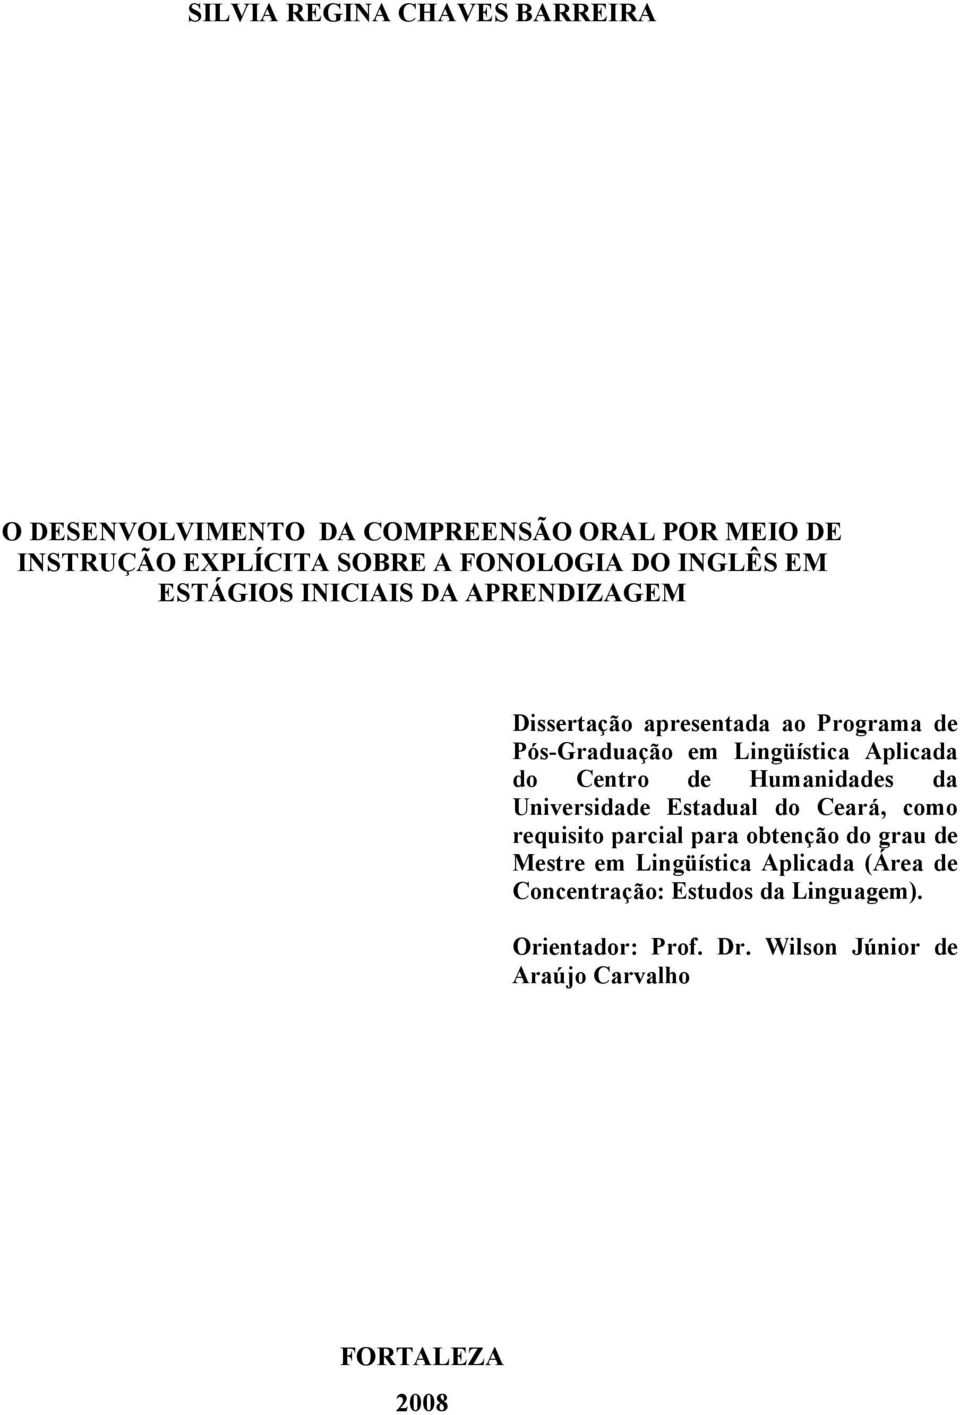 Centro de Humanidades da Universidade Estadual do Ceará, como requisito parcial para obtenção do grau de Mestre em